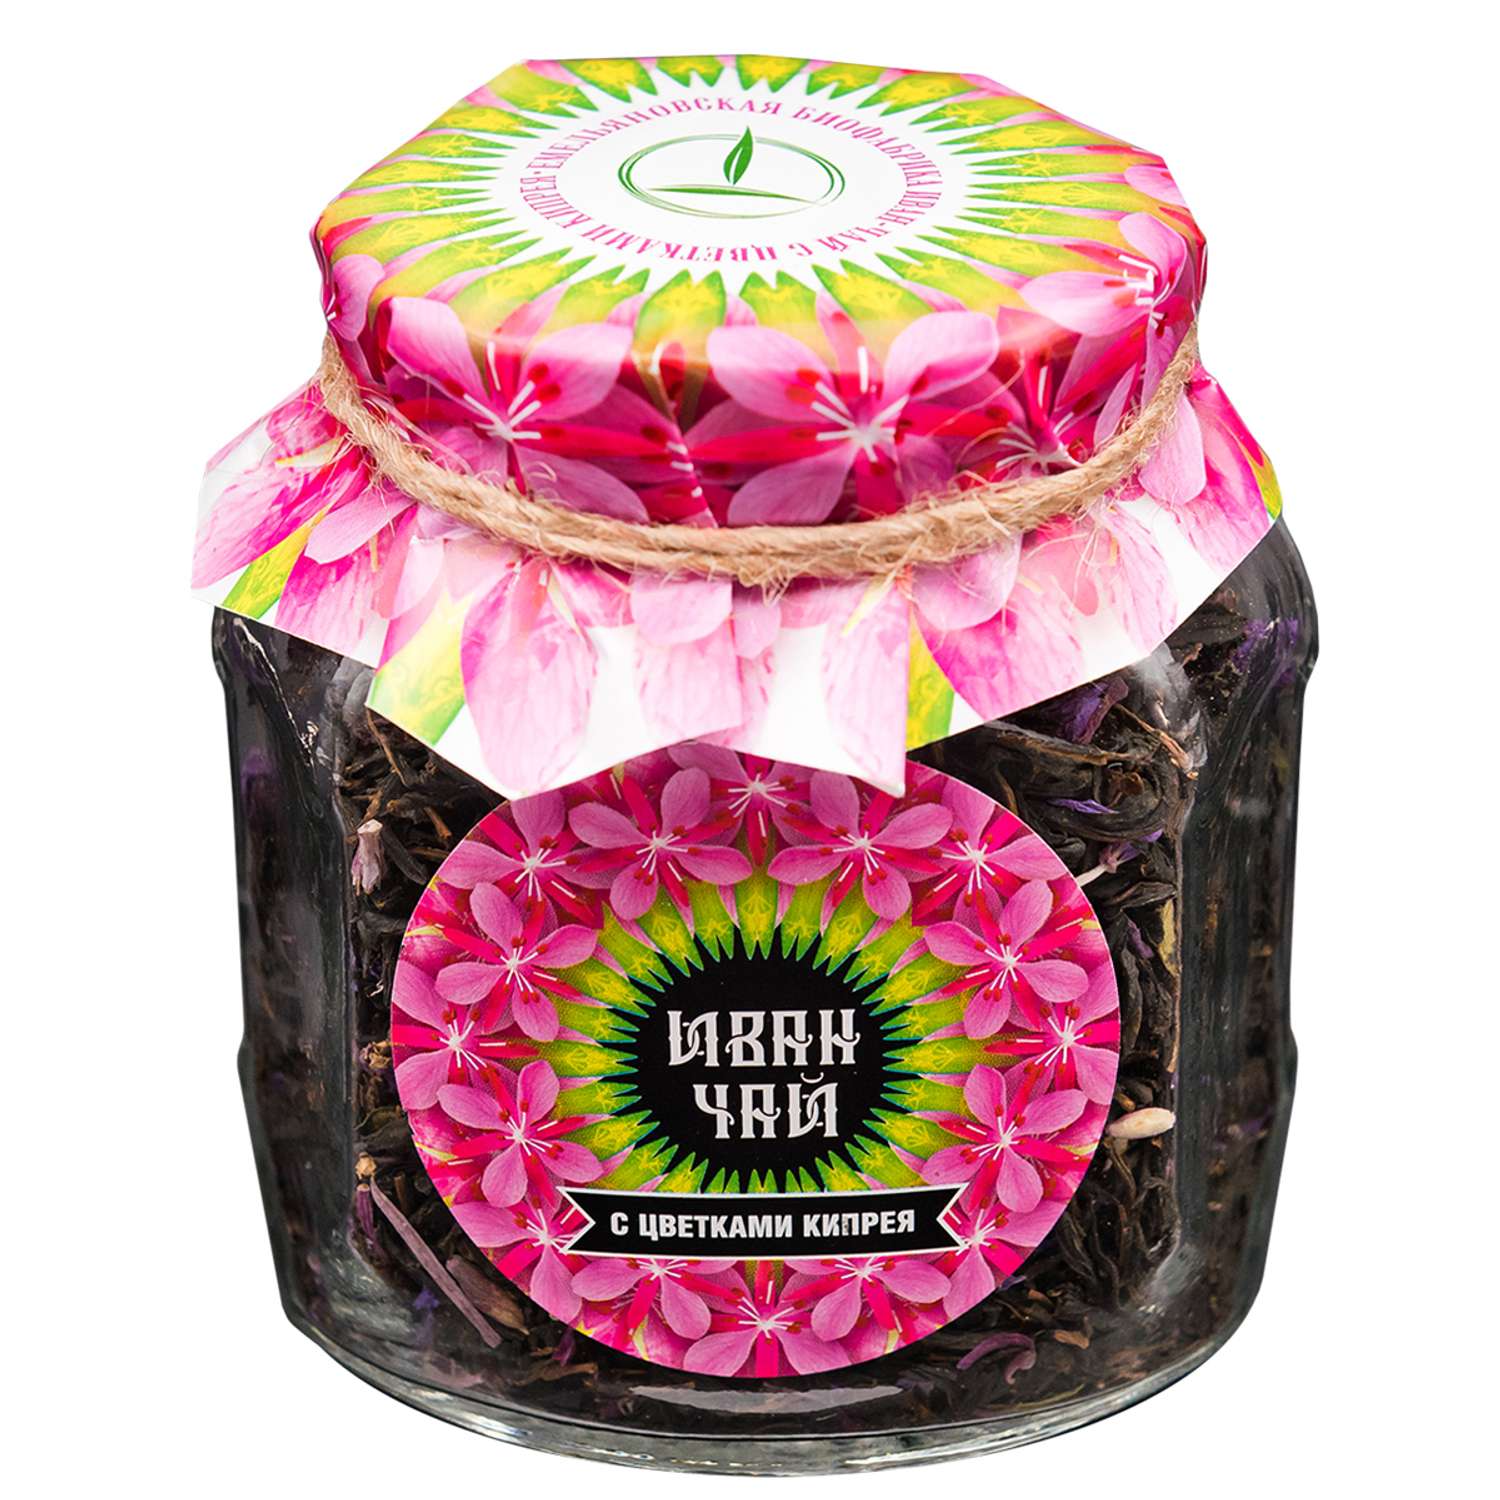 Чай Емельяновская Биофабрика иван-чай в стеклянной банке с цветами кипрея ферментированный 50 гр. в подарочной упаковке - фото 3